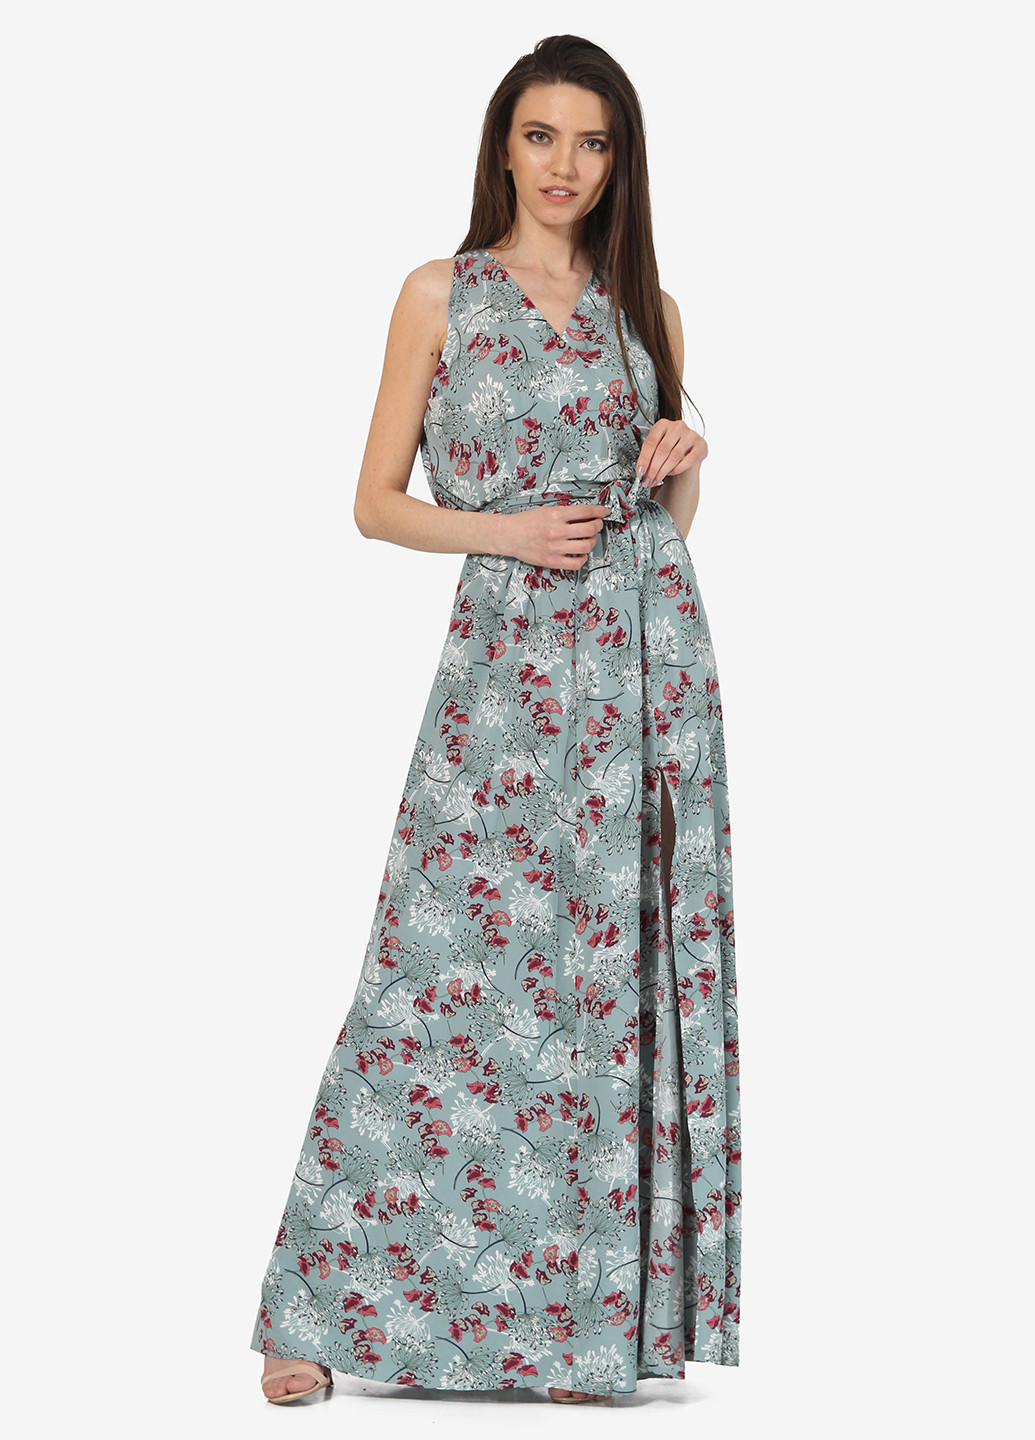 Светло-бирюзовое вечернее платье на запах Lila Kass с цветочным принтом